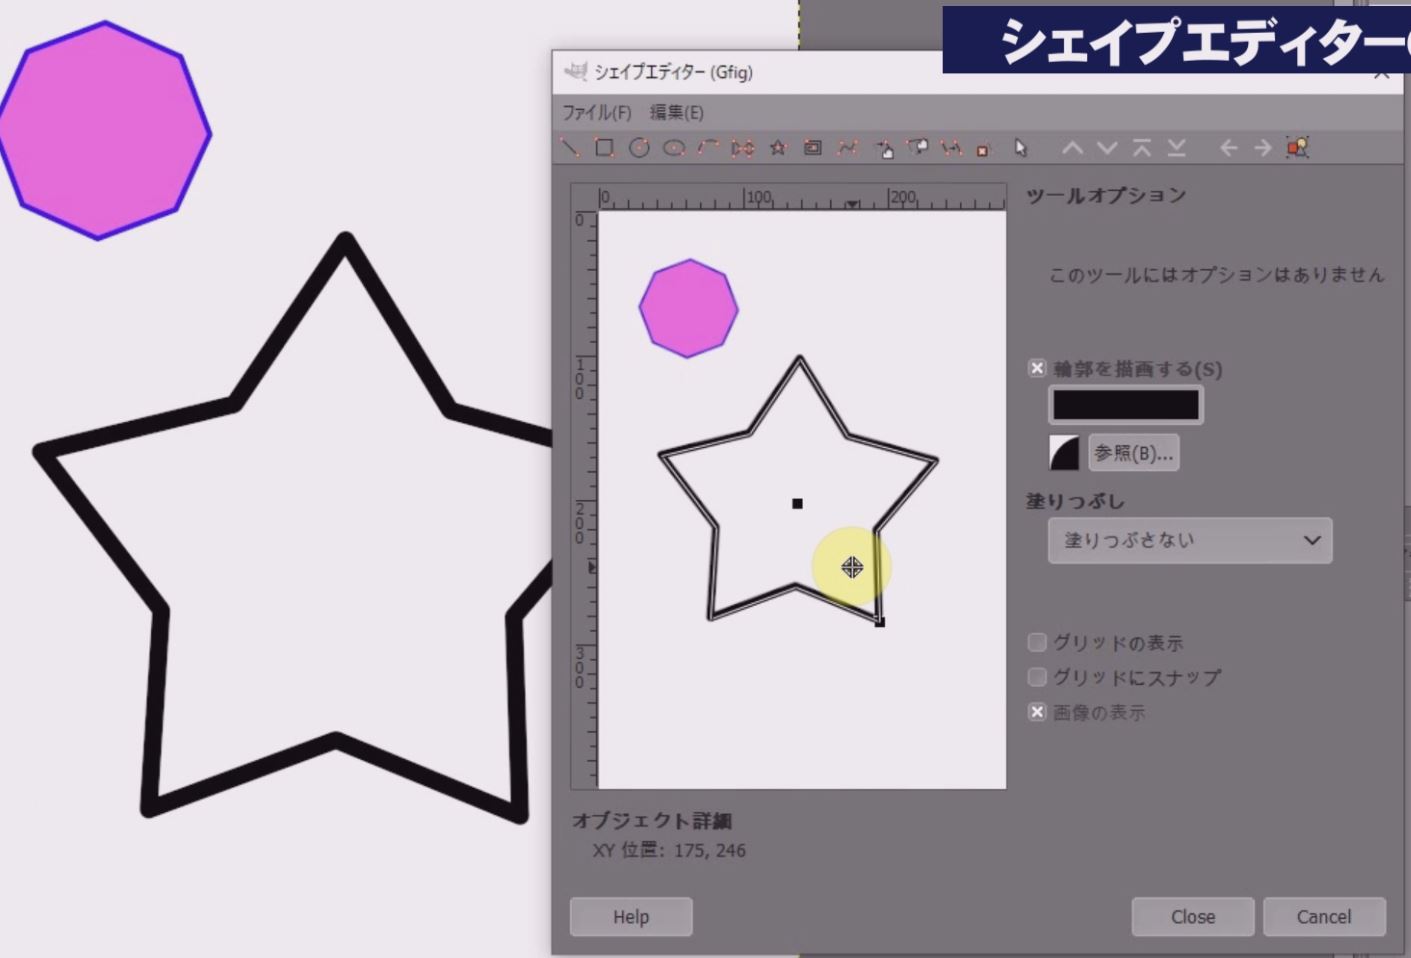 ツールで「一つのポイントを移動」を選択して星の内側にあるポイントを動かすことで星を変形させることができます。